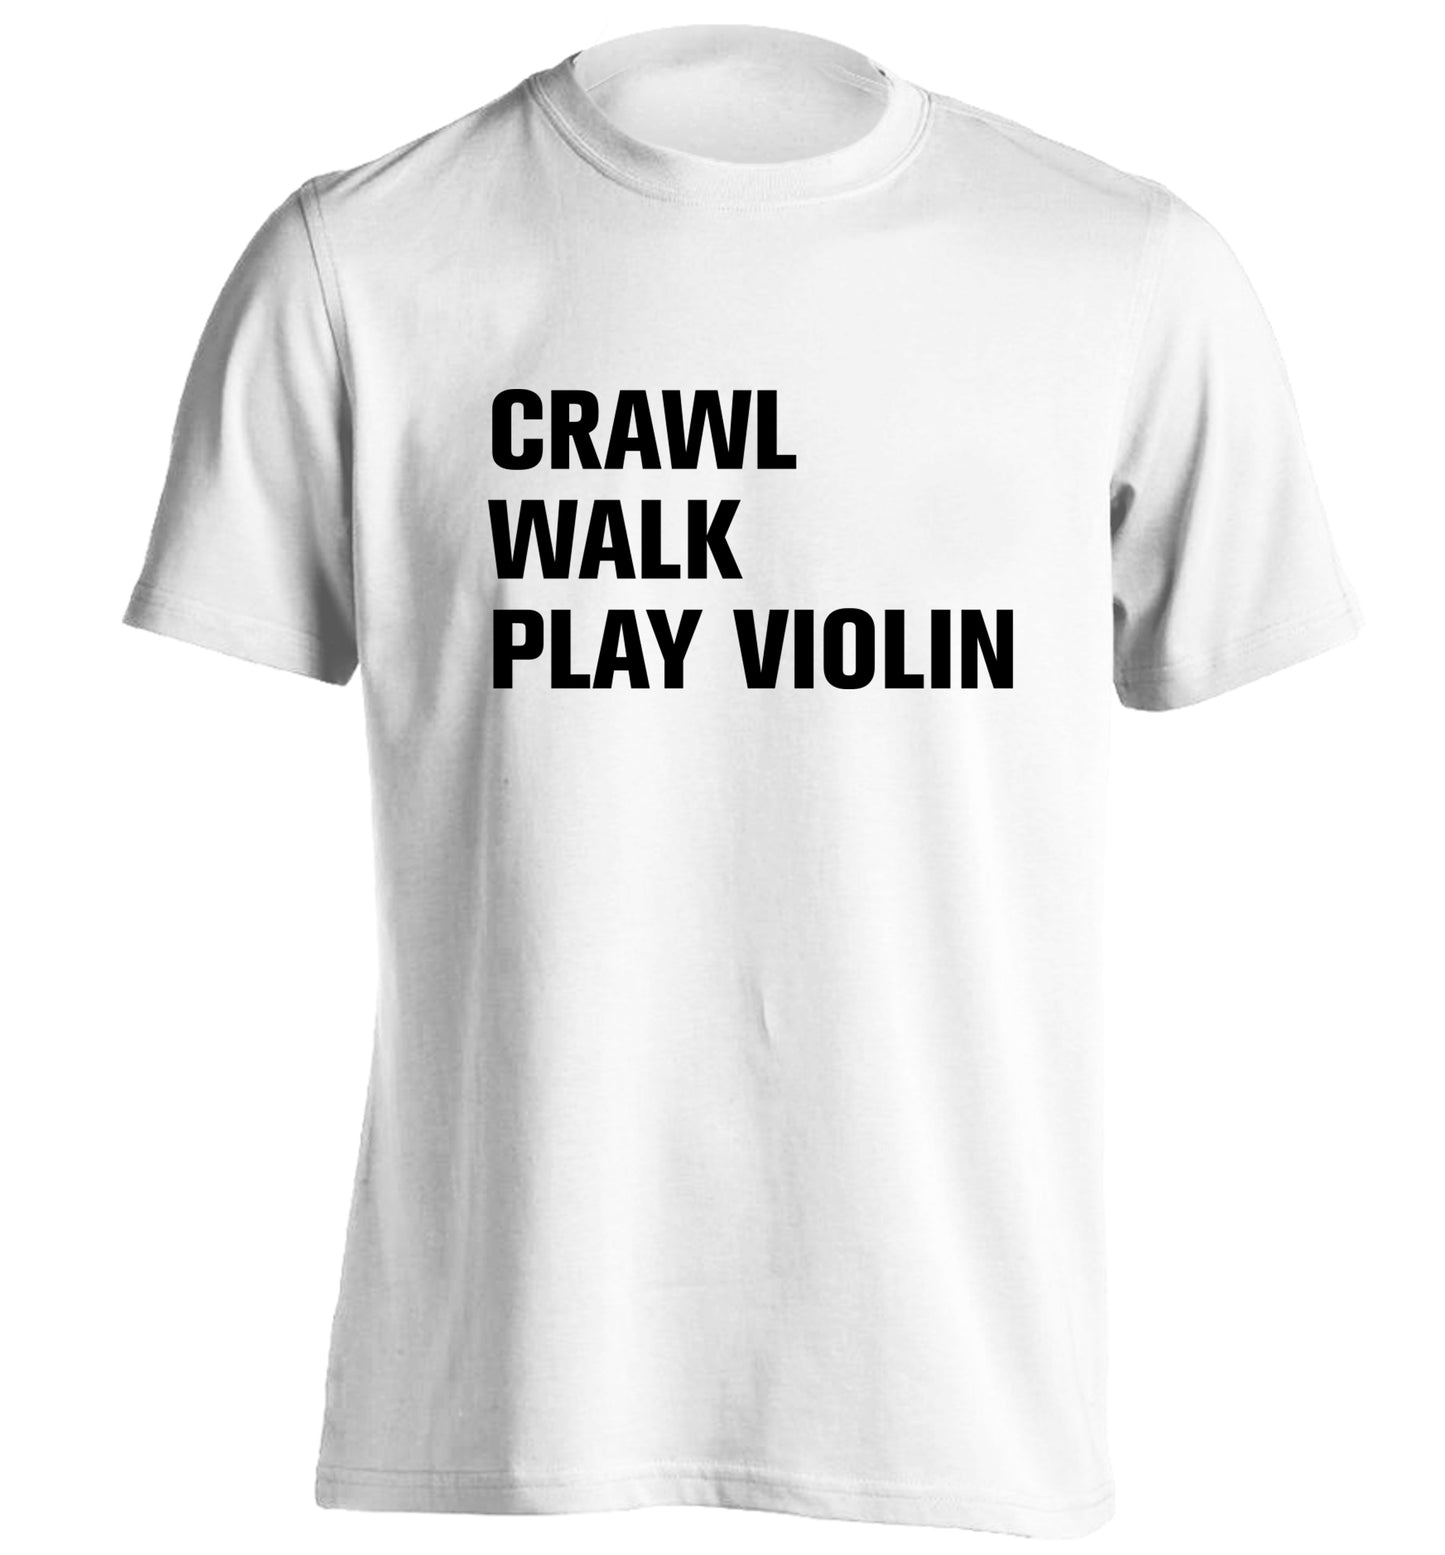 Crawl Walk Play Violin adults unisex white Tshirt 2XL